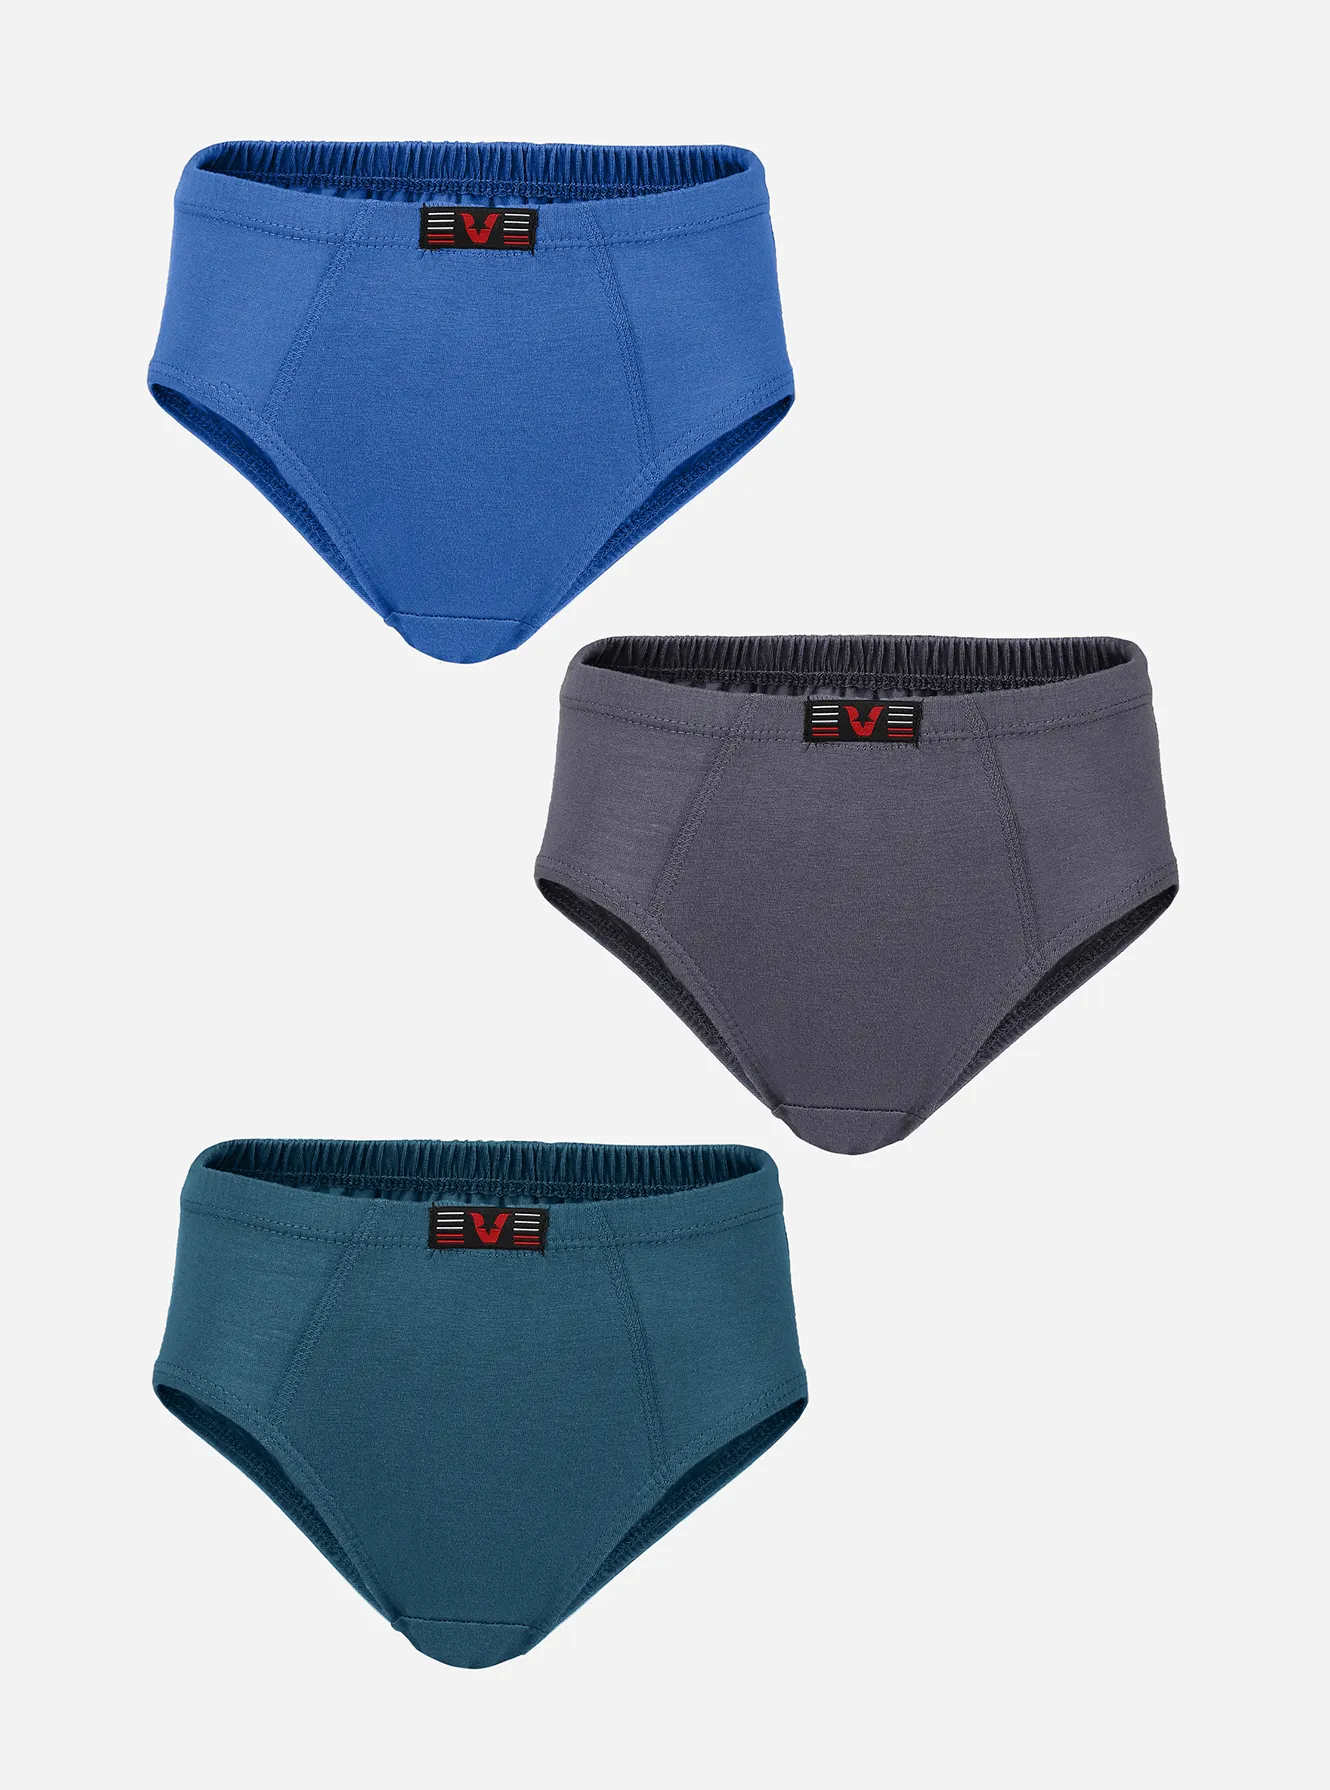 100% Cotton Underwear for Men's Multicolored / Soft Cotton